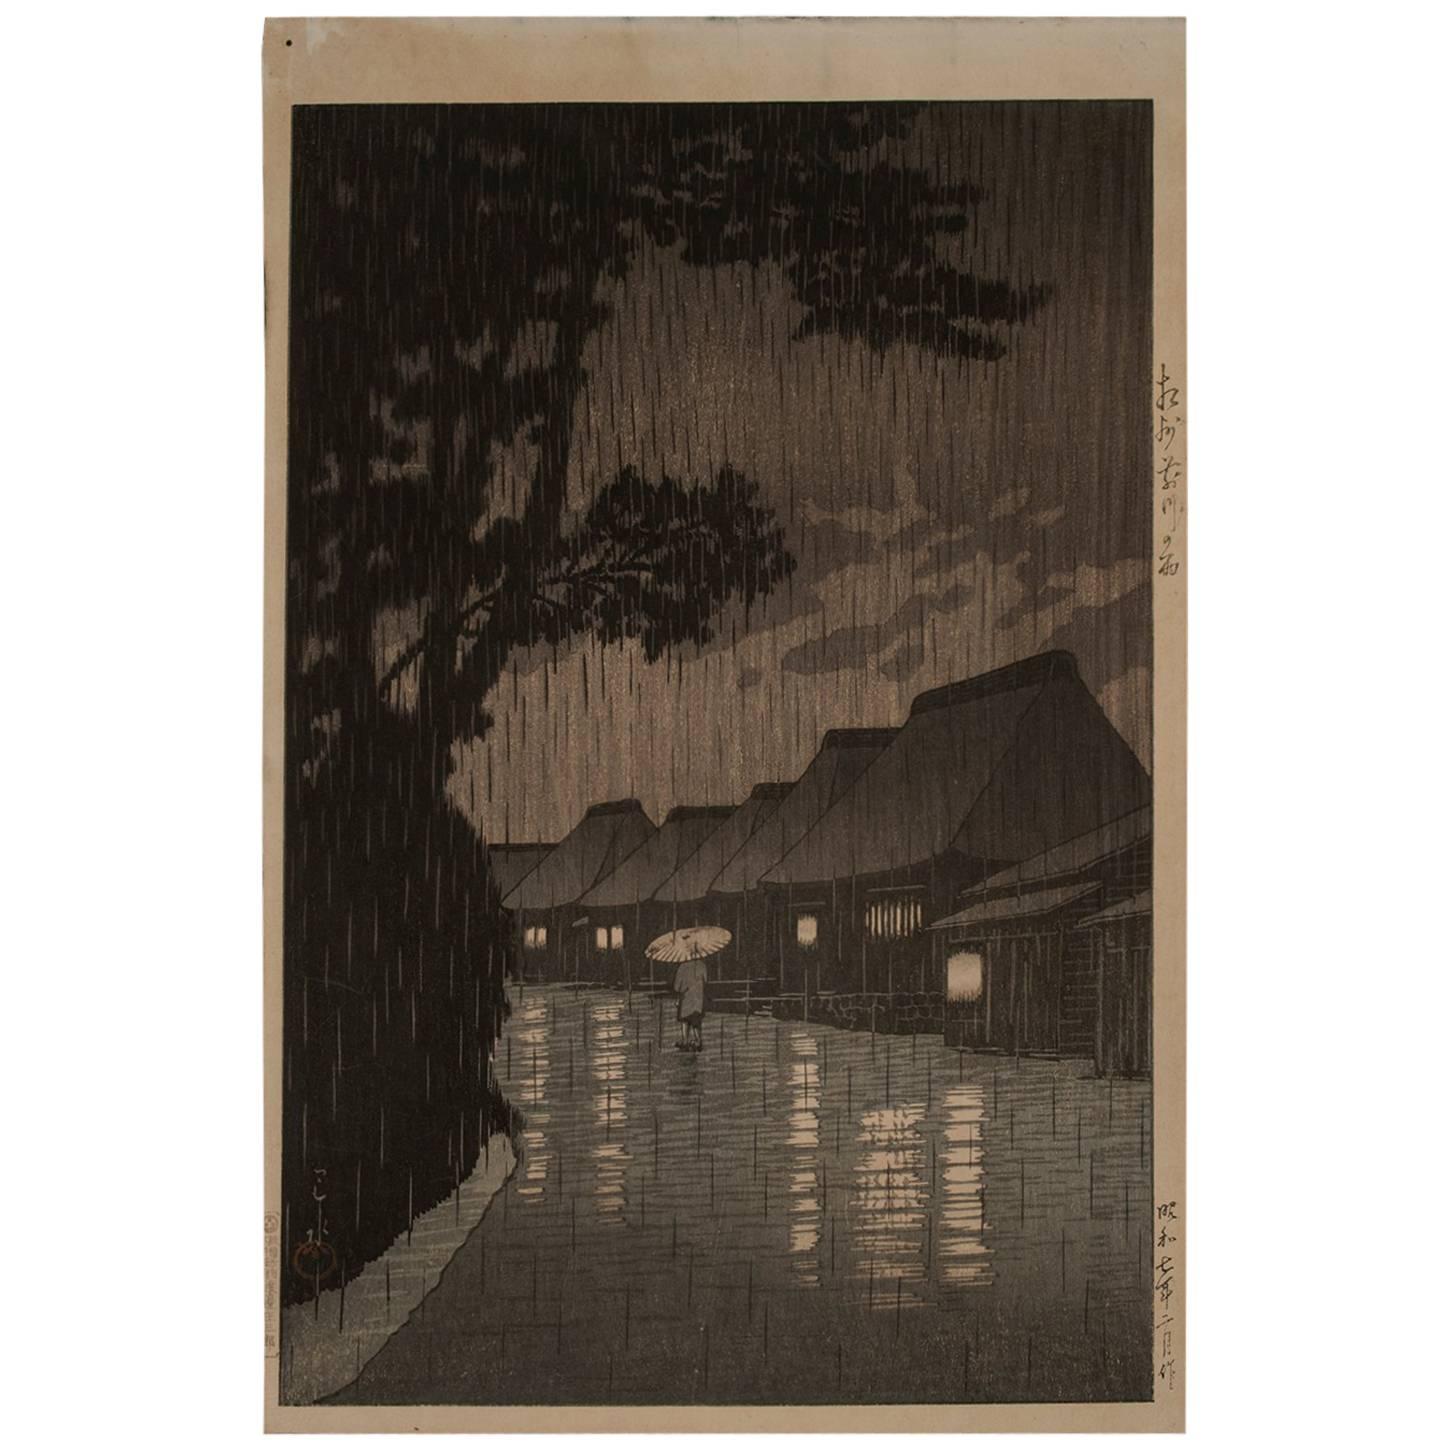 Early 20th Century Kawase Hasui Woodblock Print "Rainy Night at Maekawa"